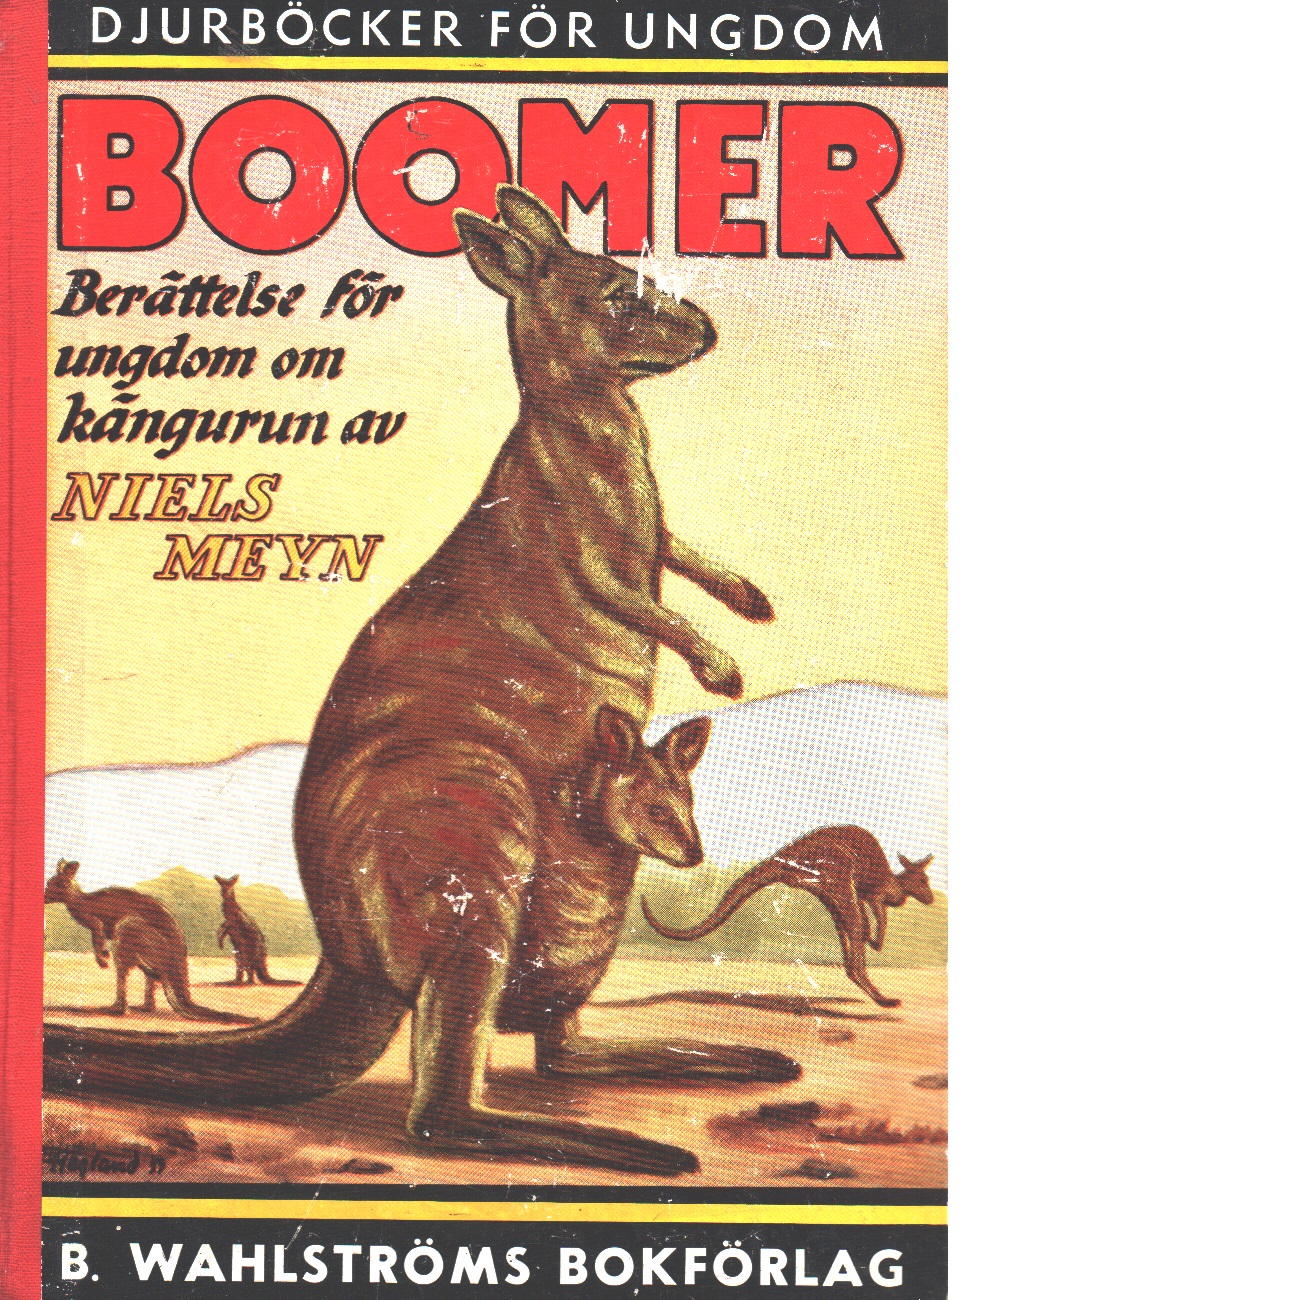 Boomer, den stora kängurun : berättelse för ungdom - Meyn, Niels